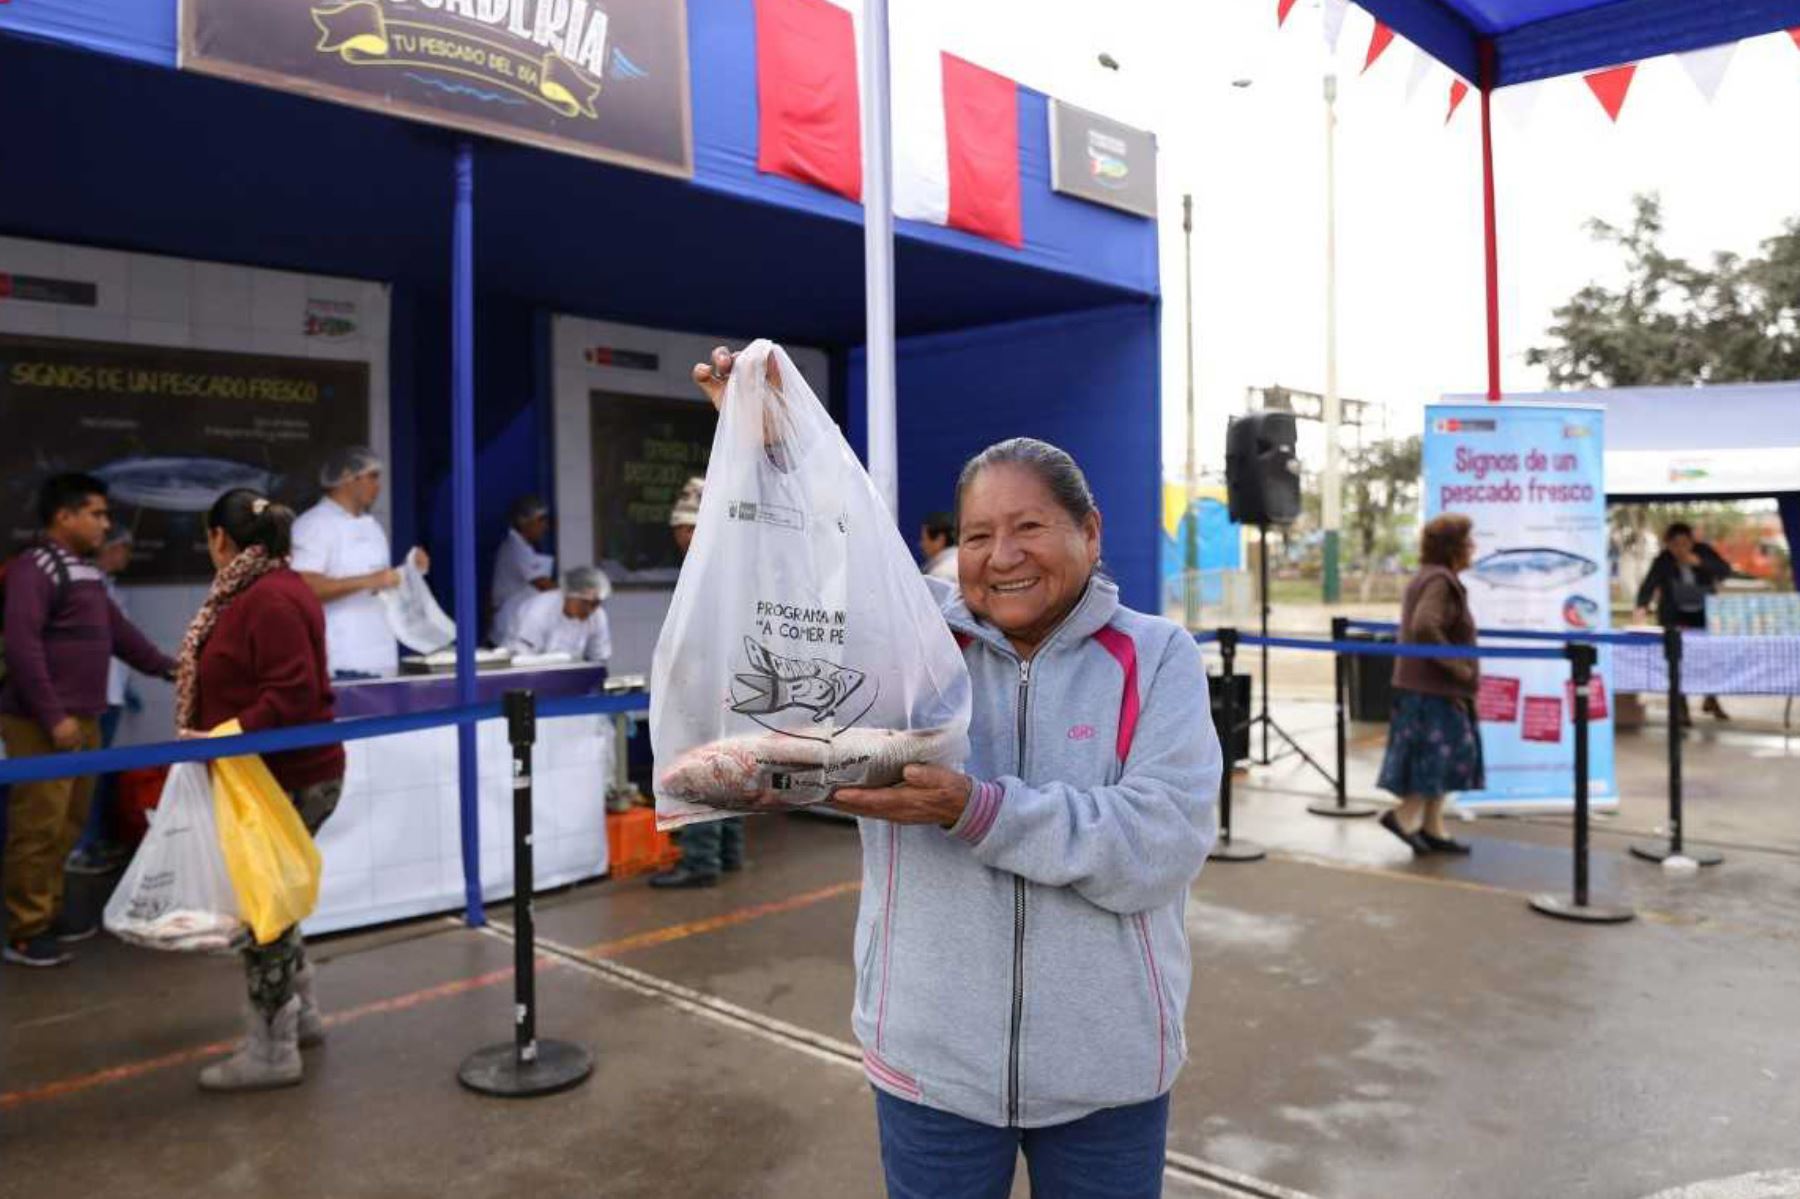 El Ministerio de la Producción, mediante el Programa Nacional “A Comer Pescado”, pondrá al alcance de las familias de Trujillo pescados nutritivos a precios de terminal, el próximo martes 16 de octubre desde las 7 de la mañana.